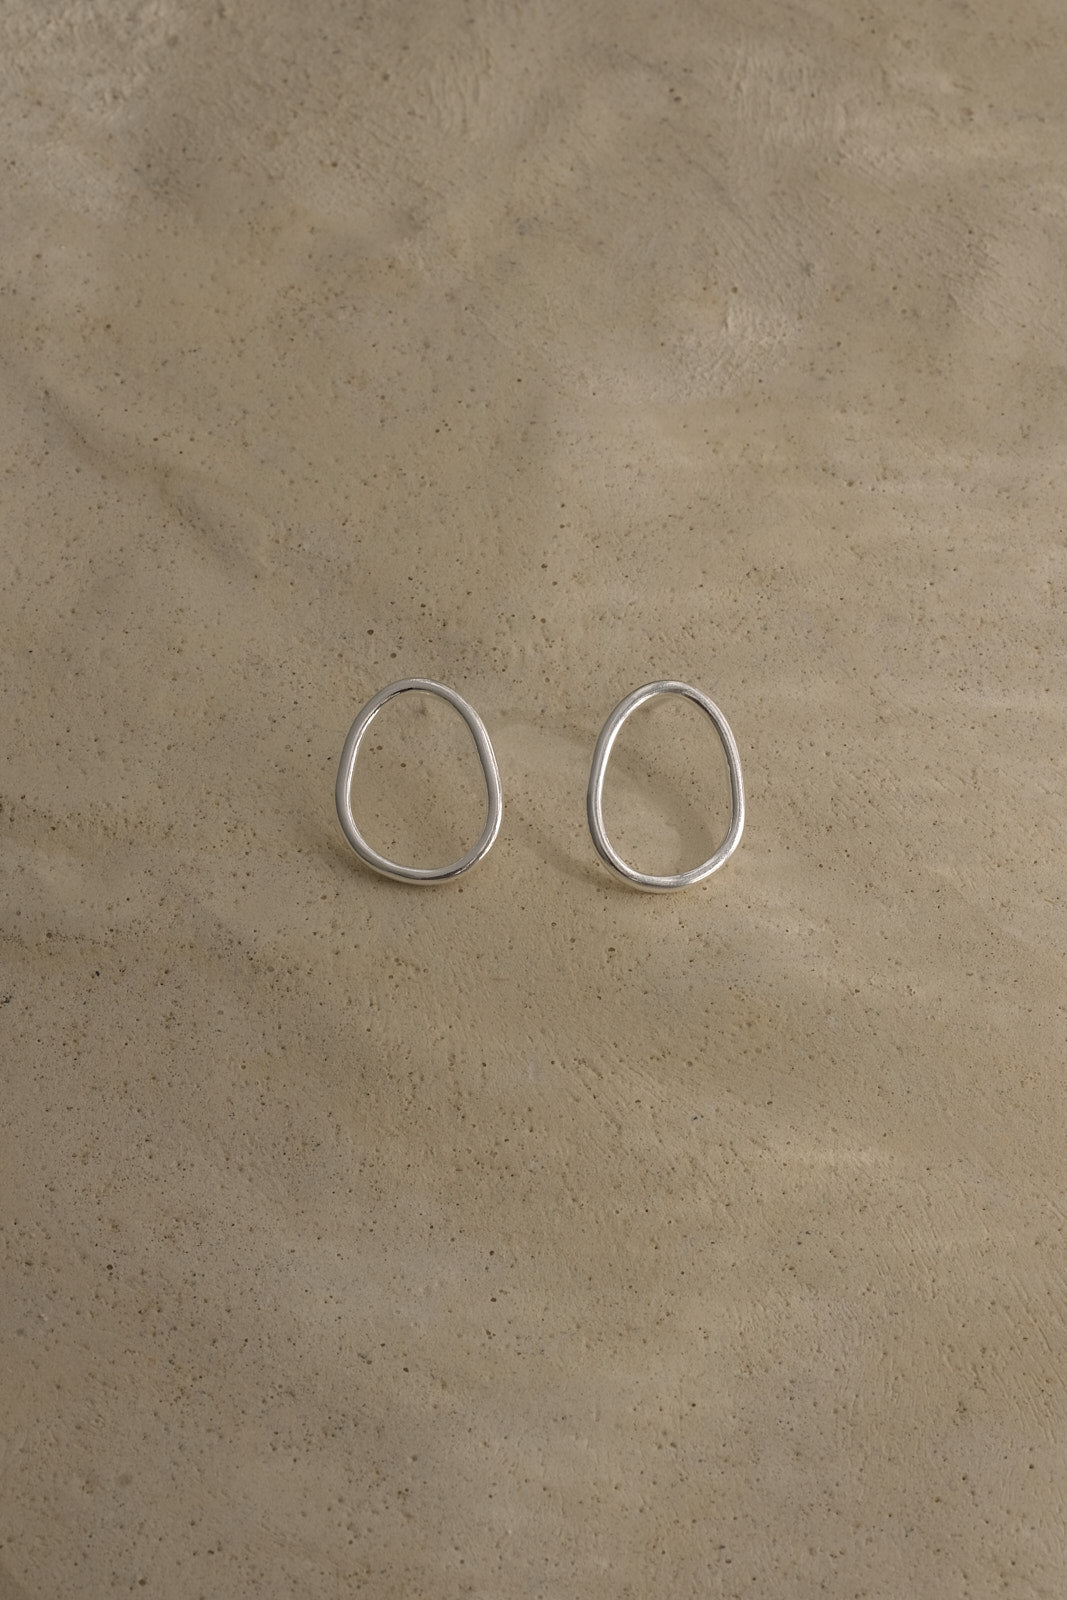 LOON small earrings